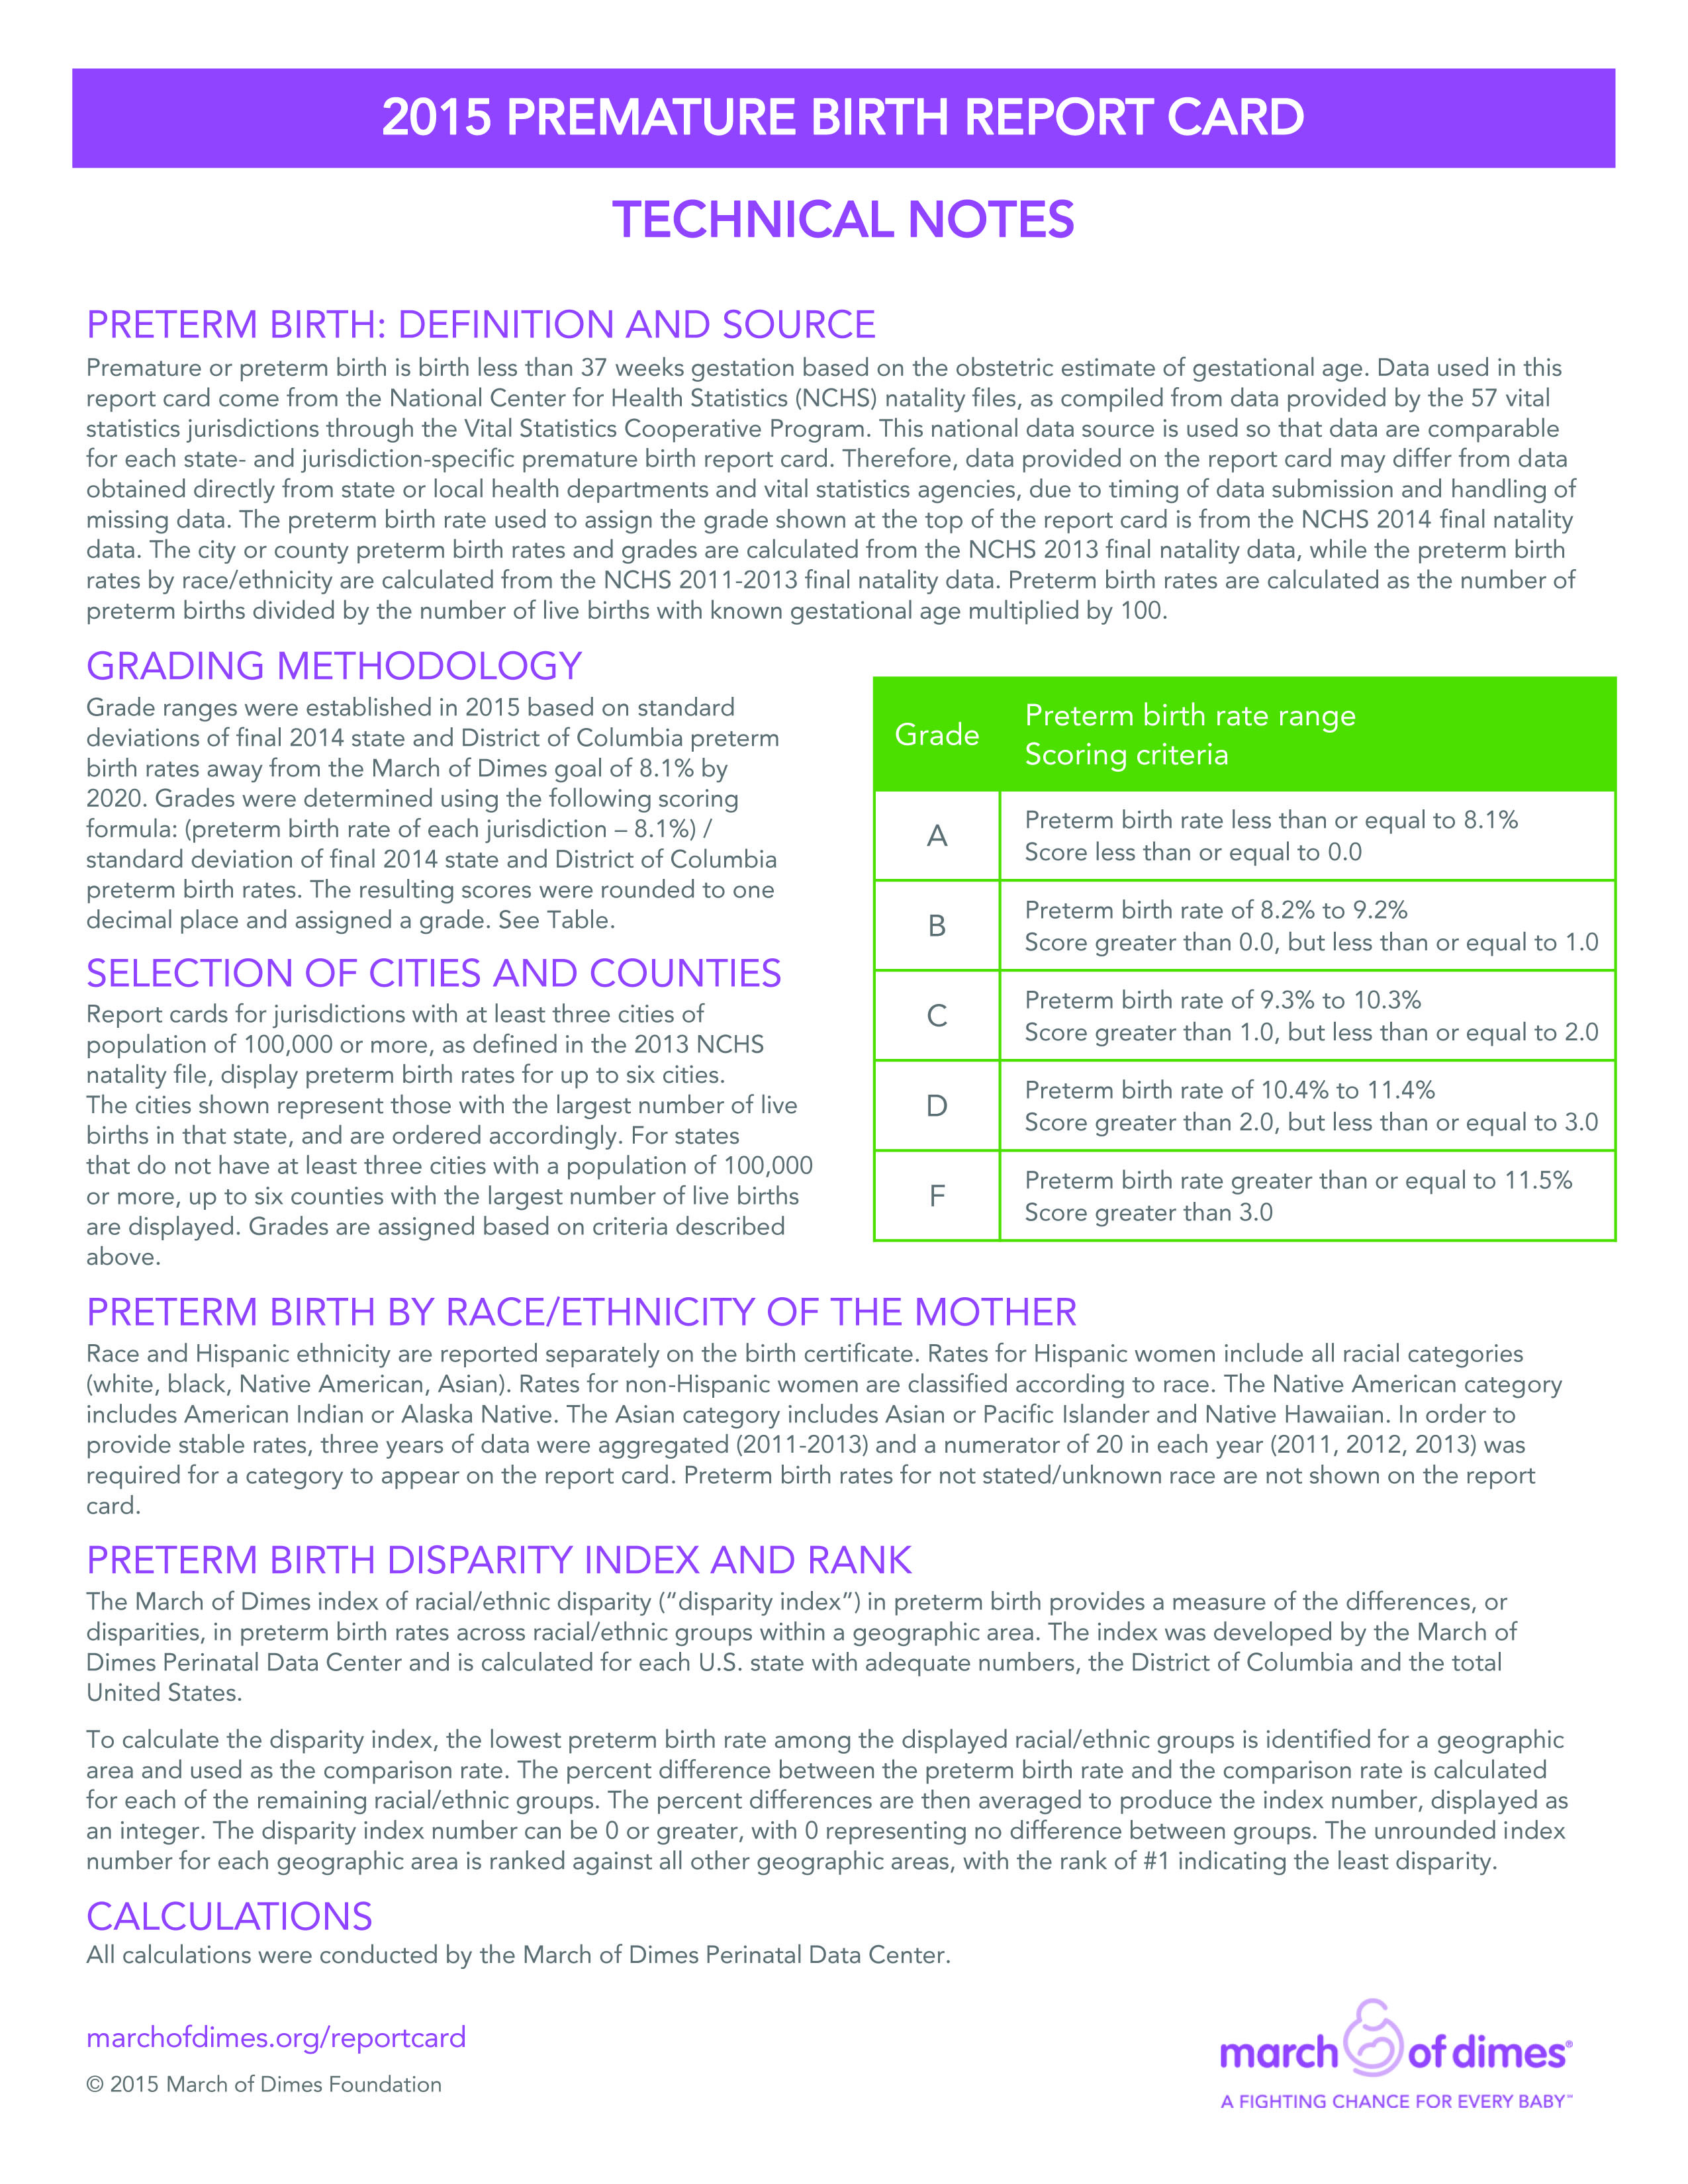 March of Dimes Premature Birth Report Card